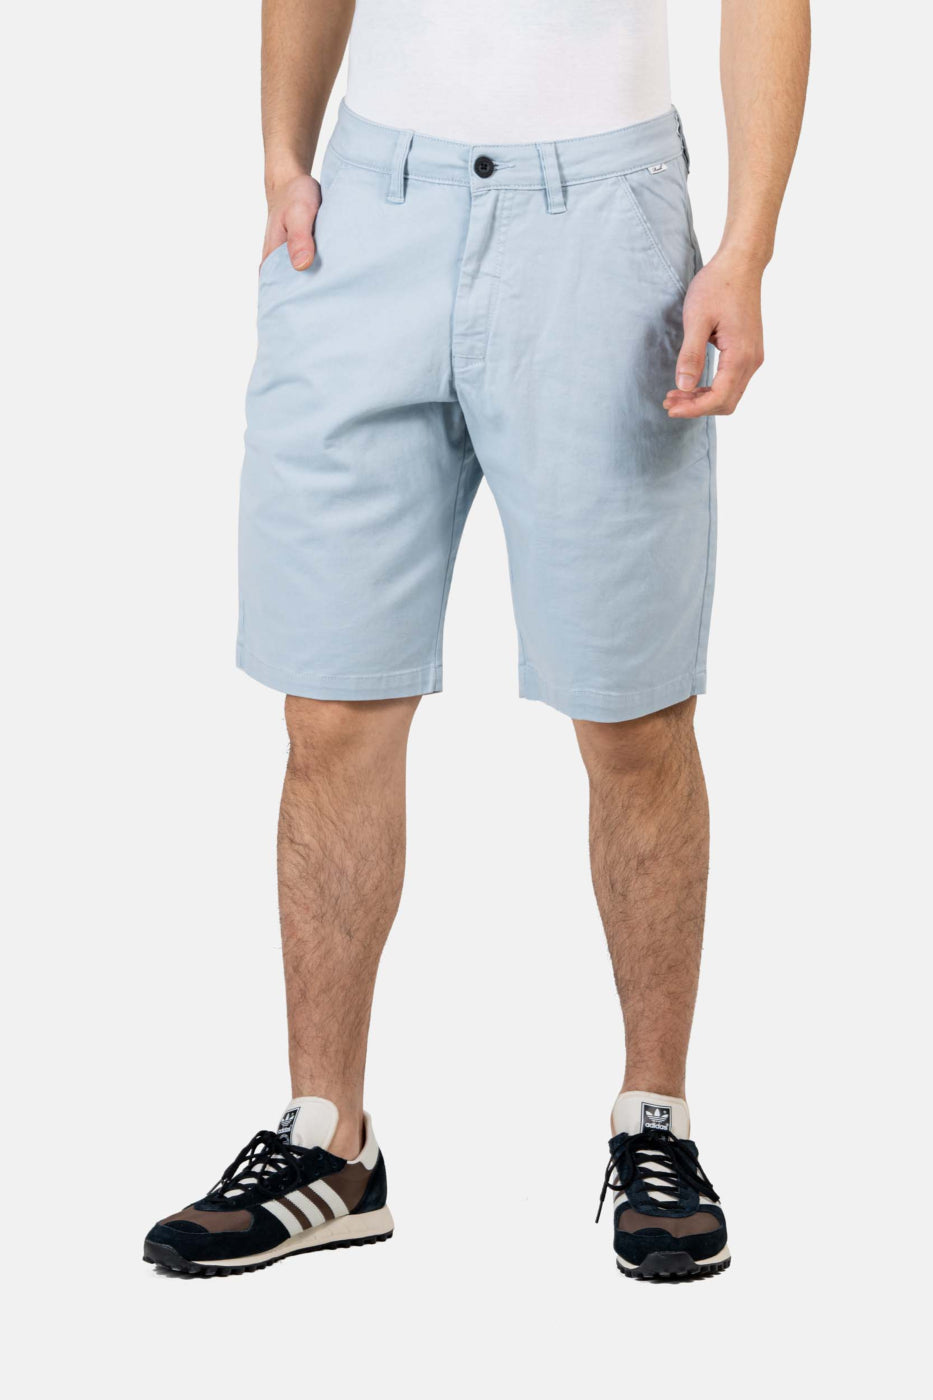  Reell Flex Grip Chino Short in soft blue I Herren Shorts online kaufen